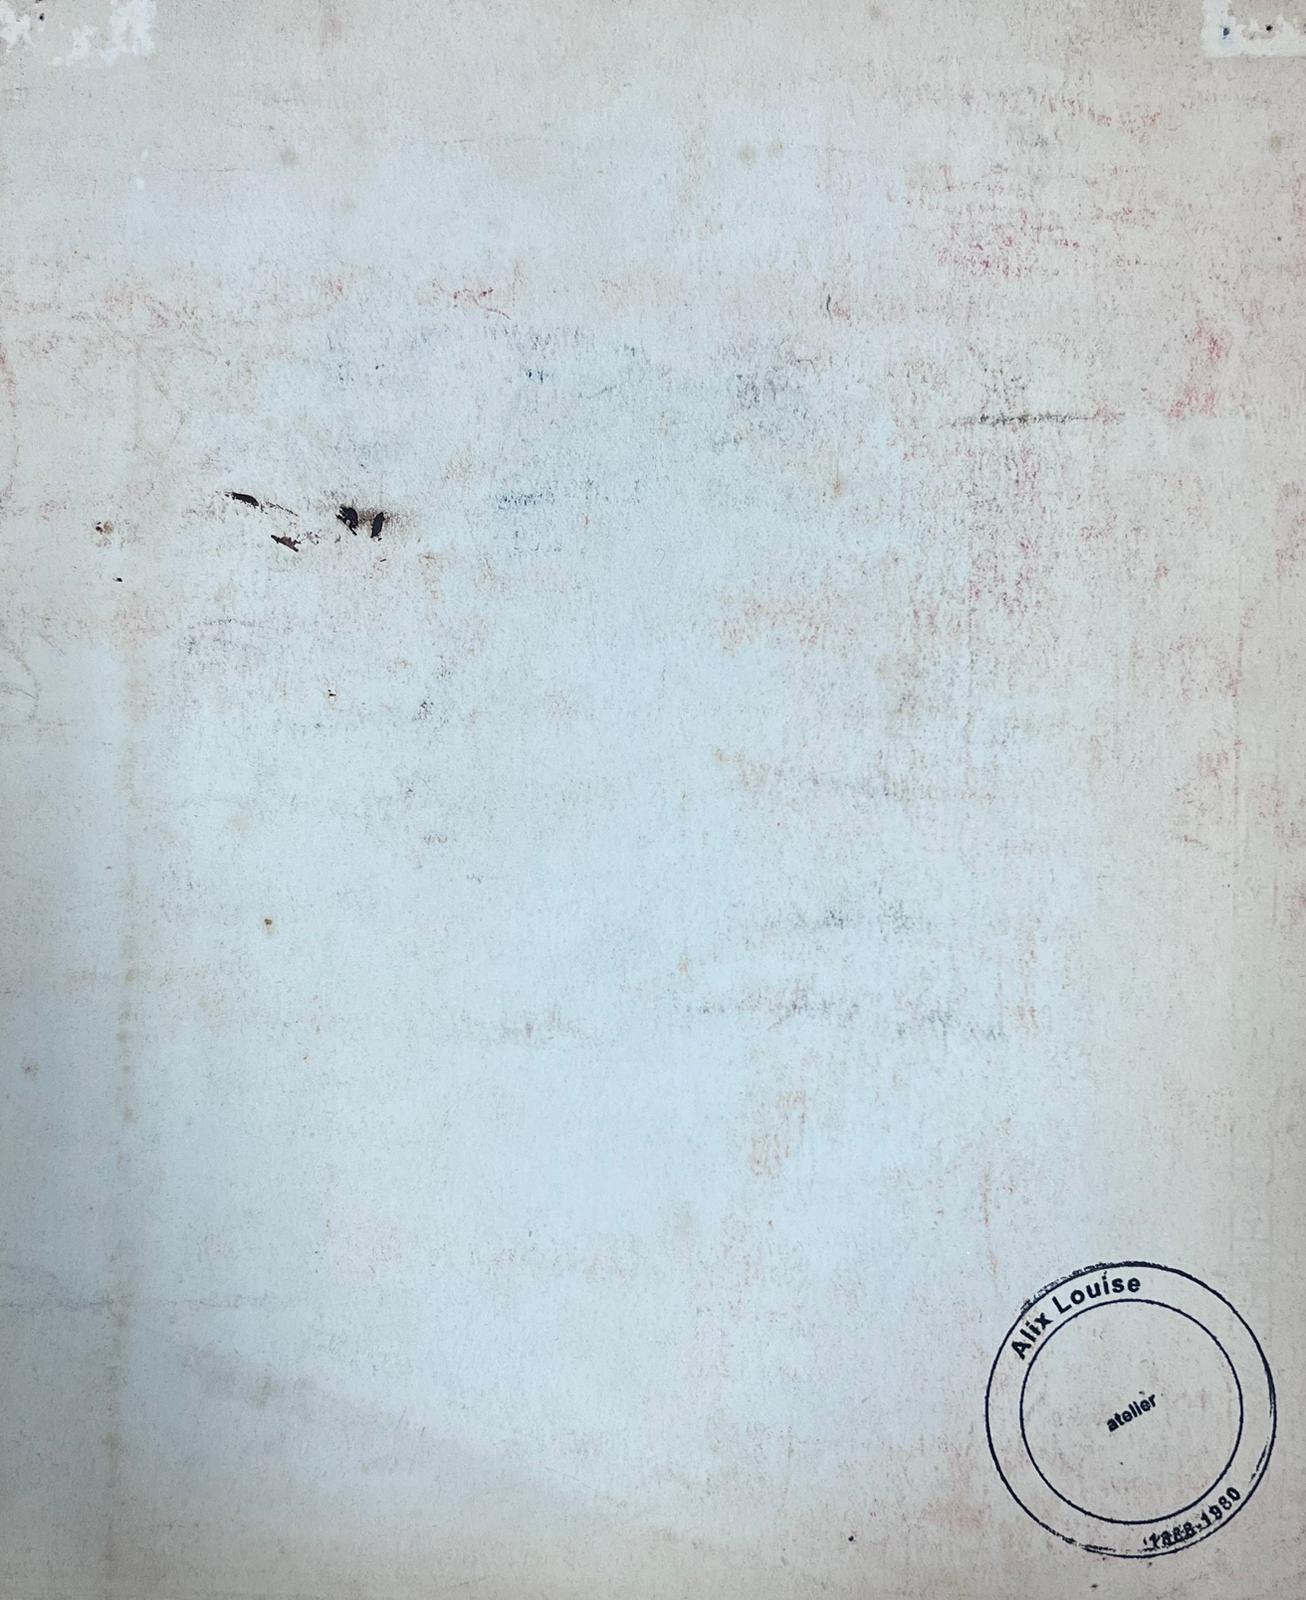 L'Artistics 
signé par Louise Alix (française, 1888-1980) *voir notes ci-dessous
cachet de provenance au dos 
peinture à l'eau sur papier d'artiste, non encadrée
mesure : 10,5 pouces de haut par 8,5 pouces de large
état : globalement très bon et